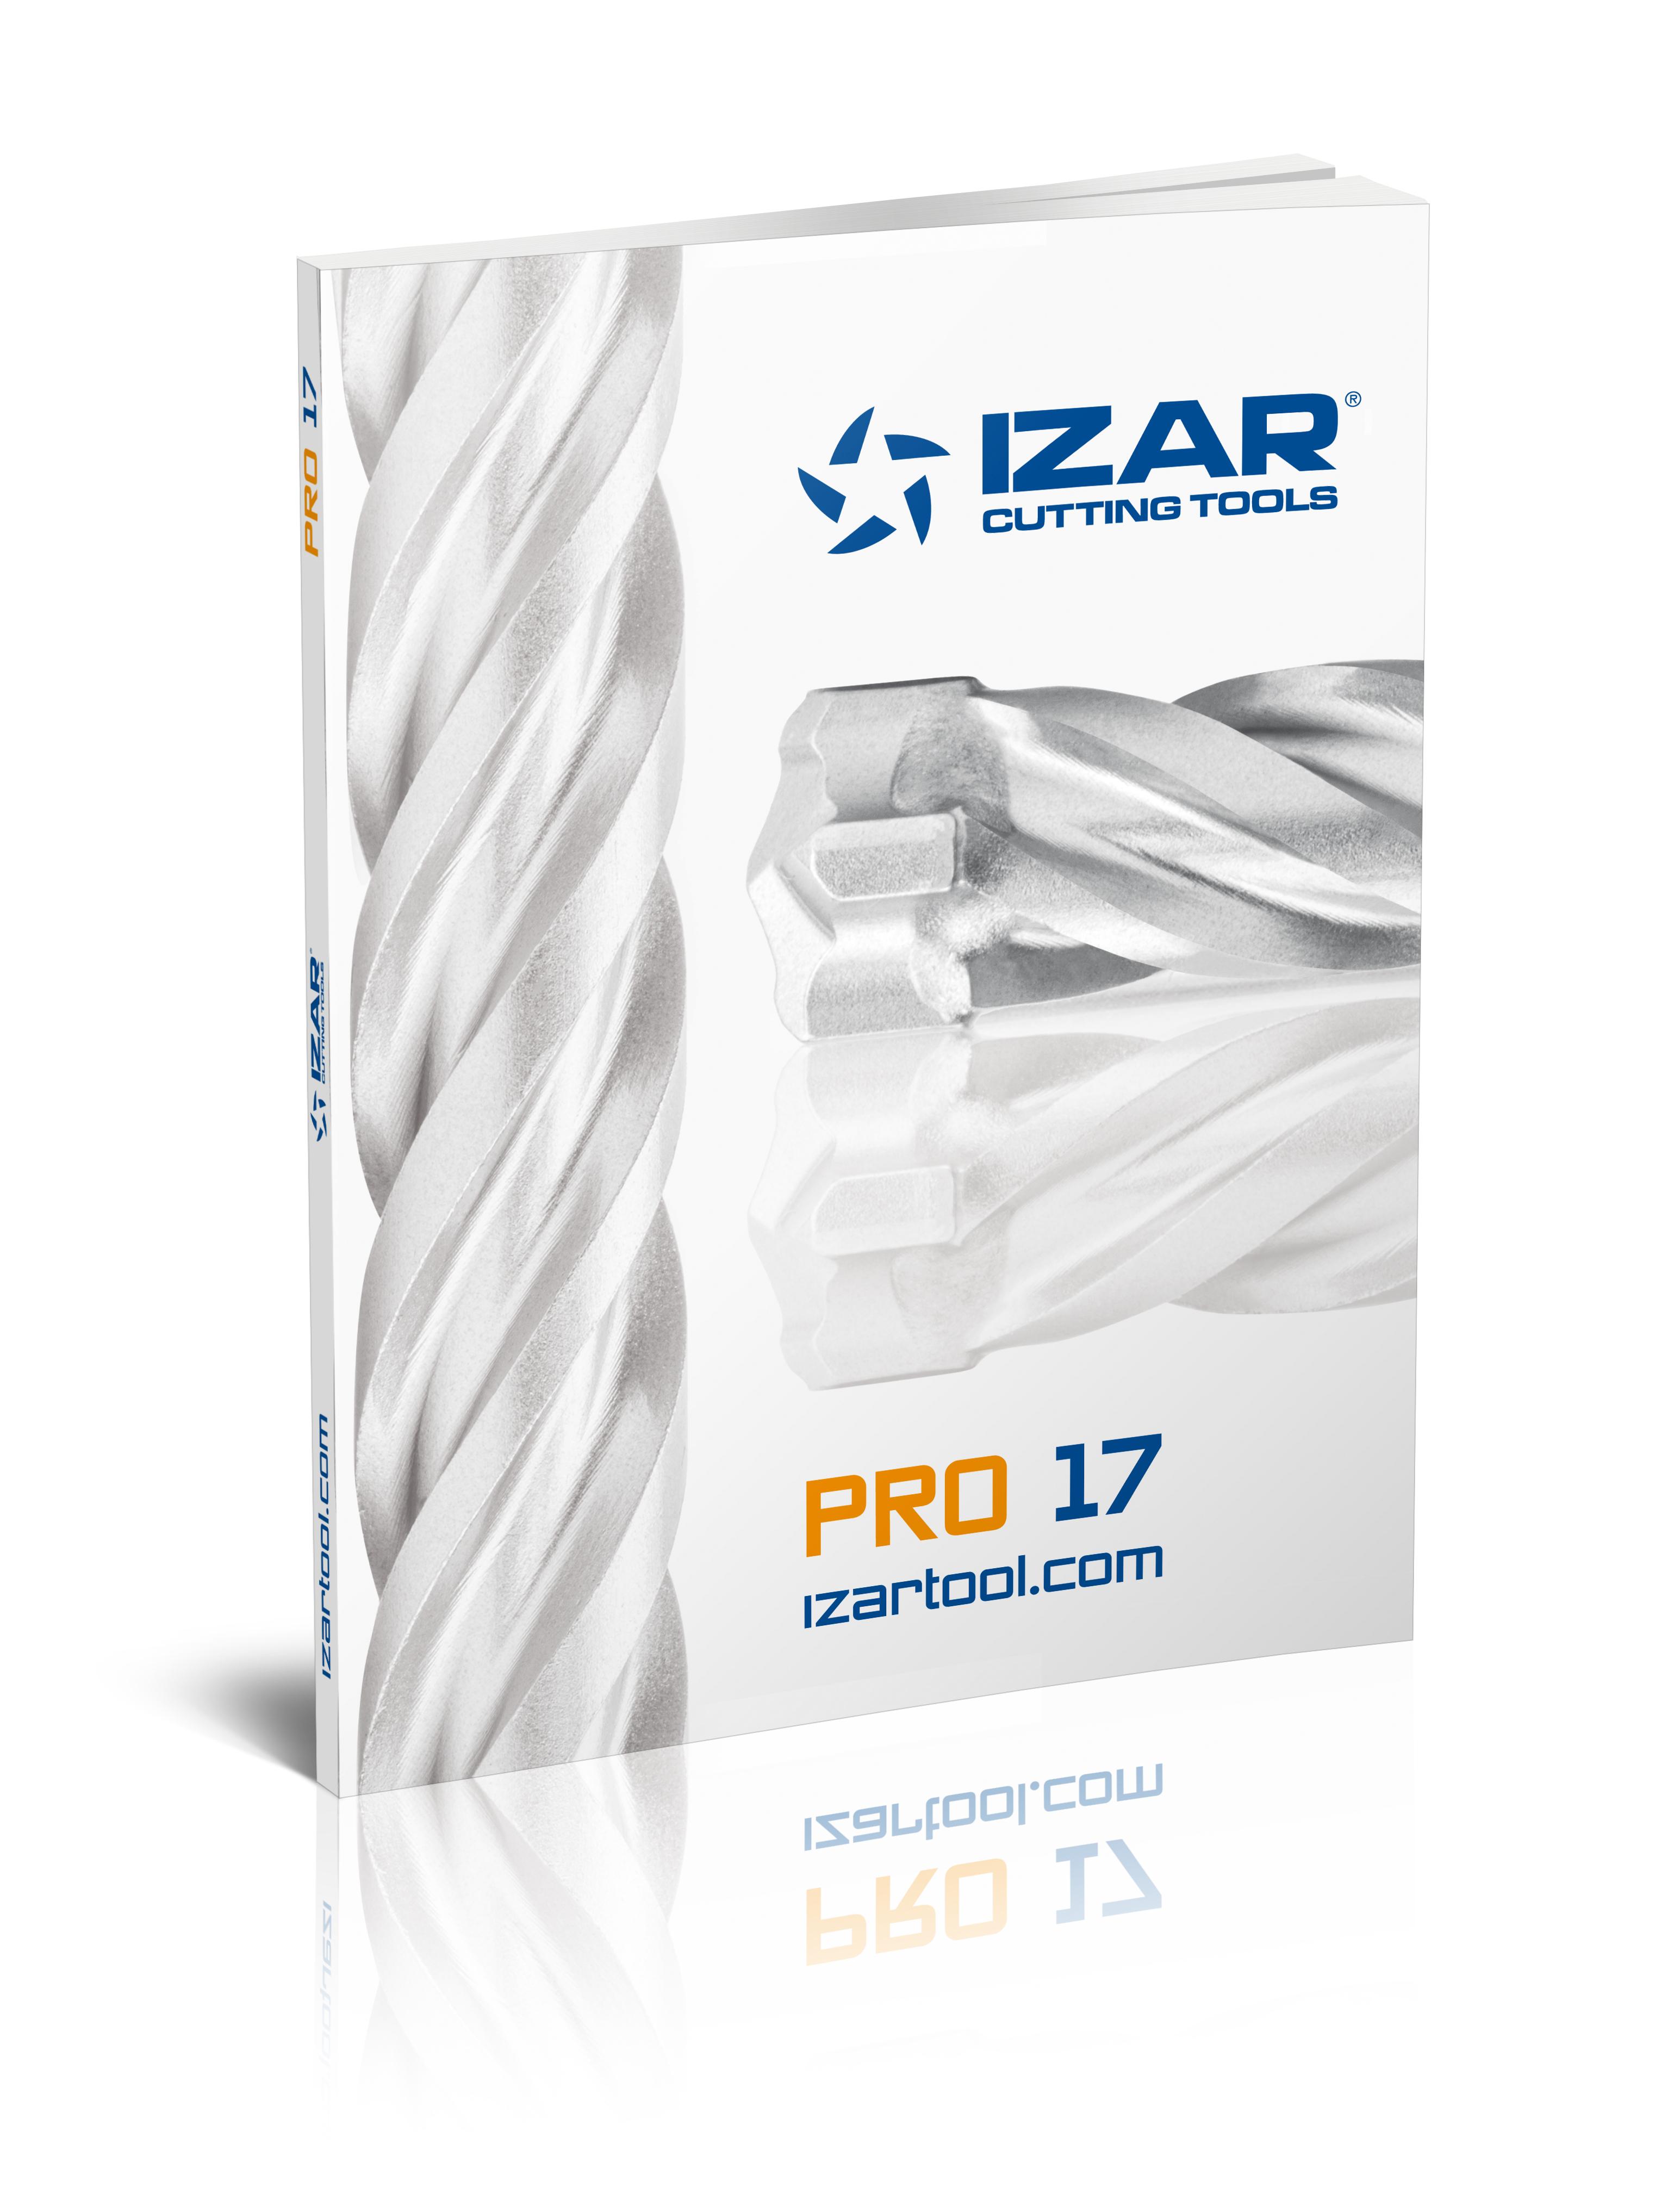 Muchas novedades en el nuevo catálogo professional de IZAR